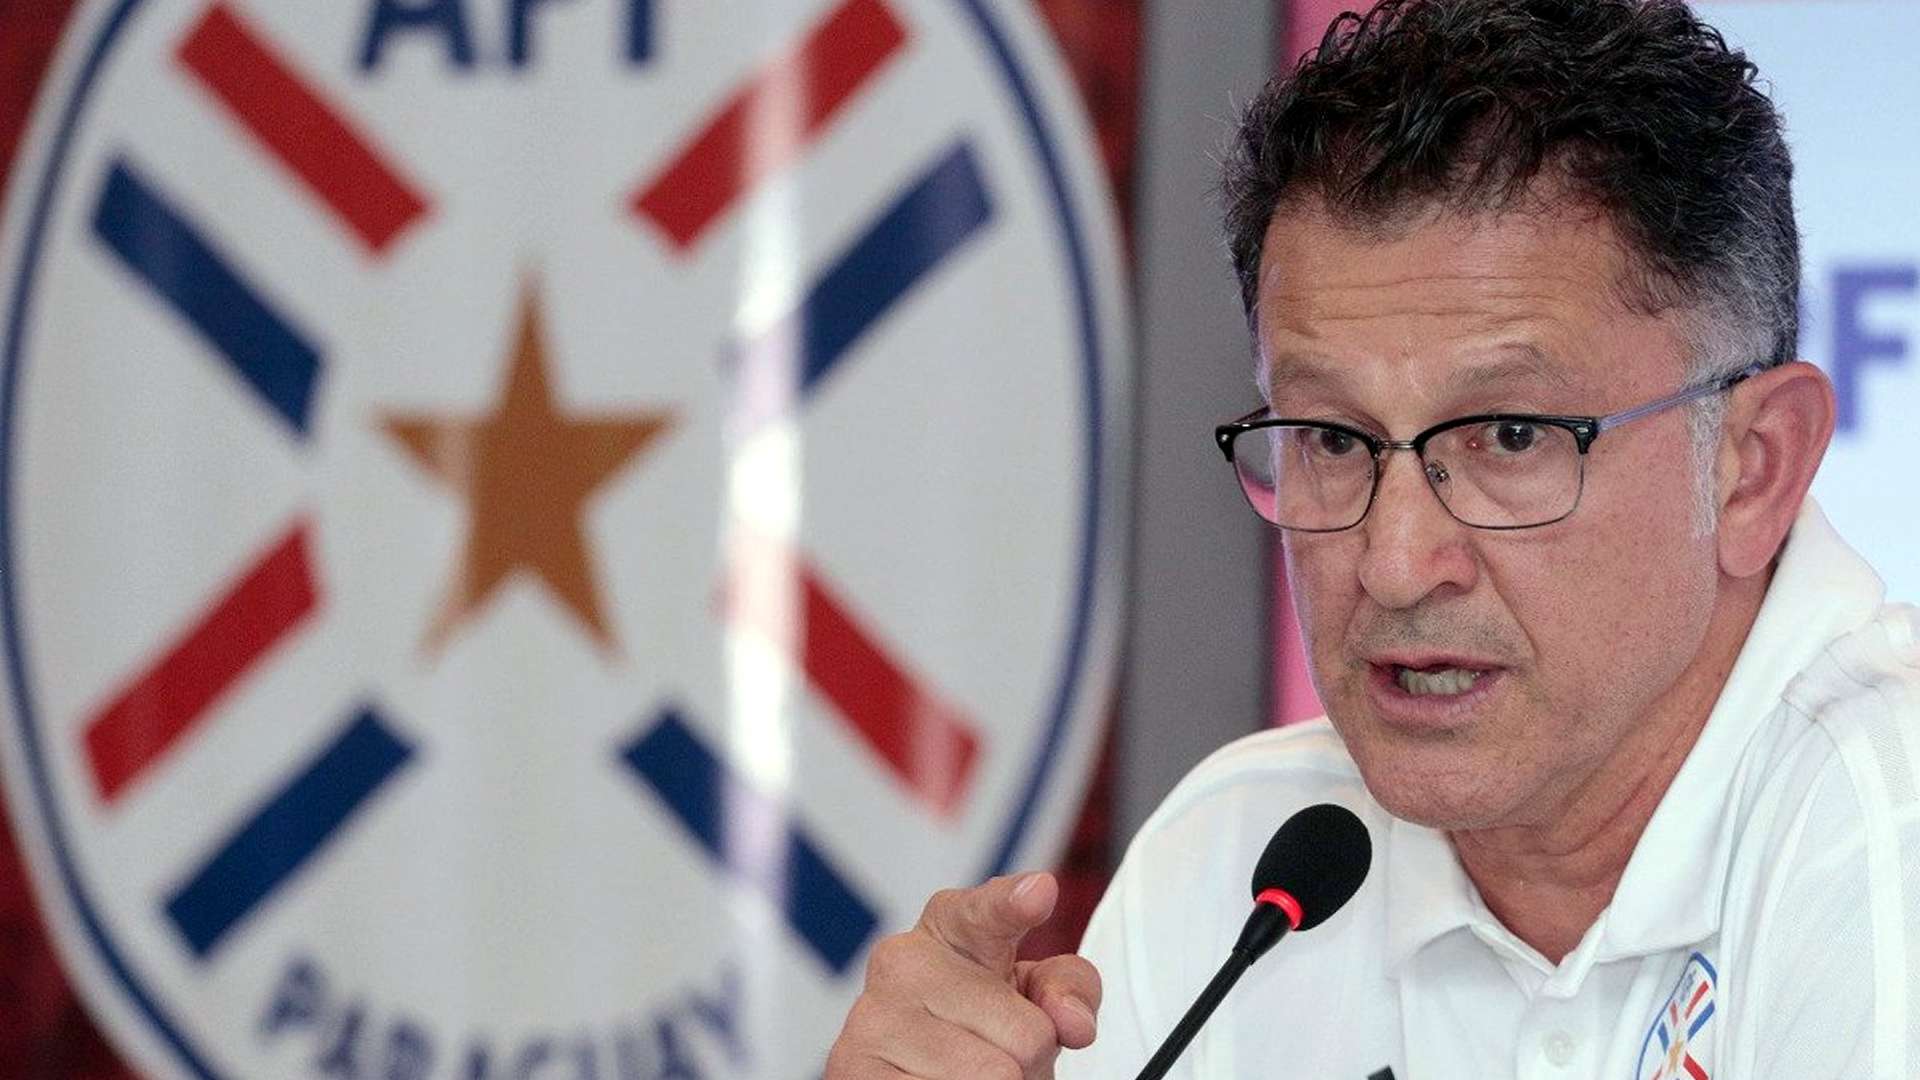 Juan Carlos Osorio Seleccion Paraguay 2018